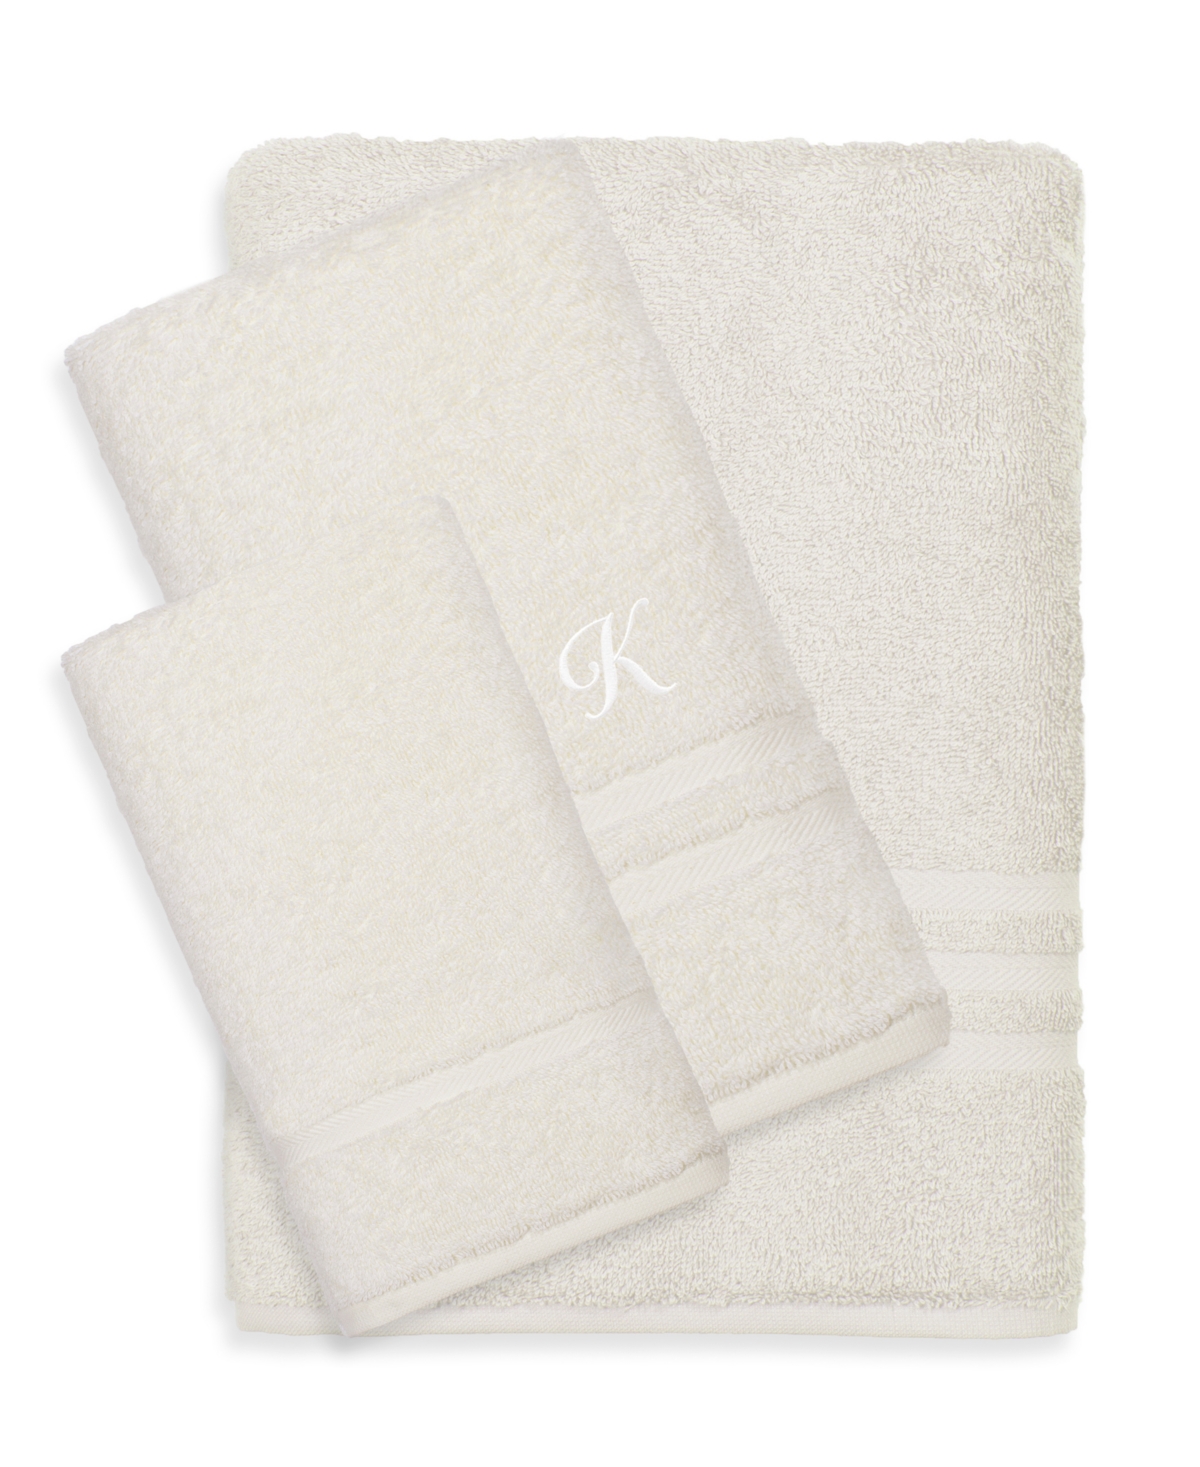 Linum Home Textiles Turkish Cotton Personalized Denzi Towel Set, 3 Piece In Tan,beige